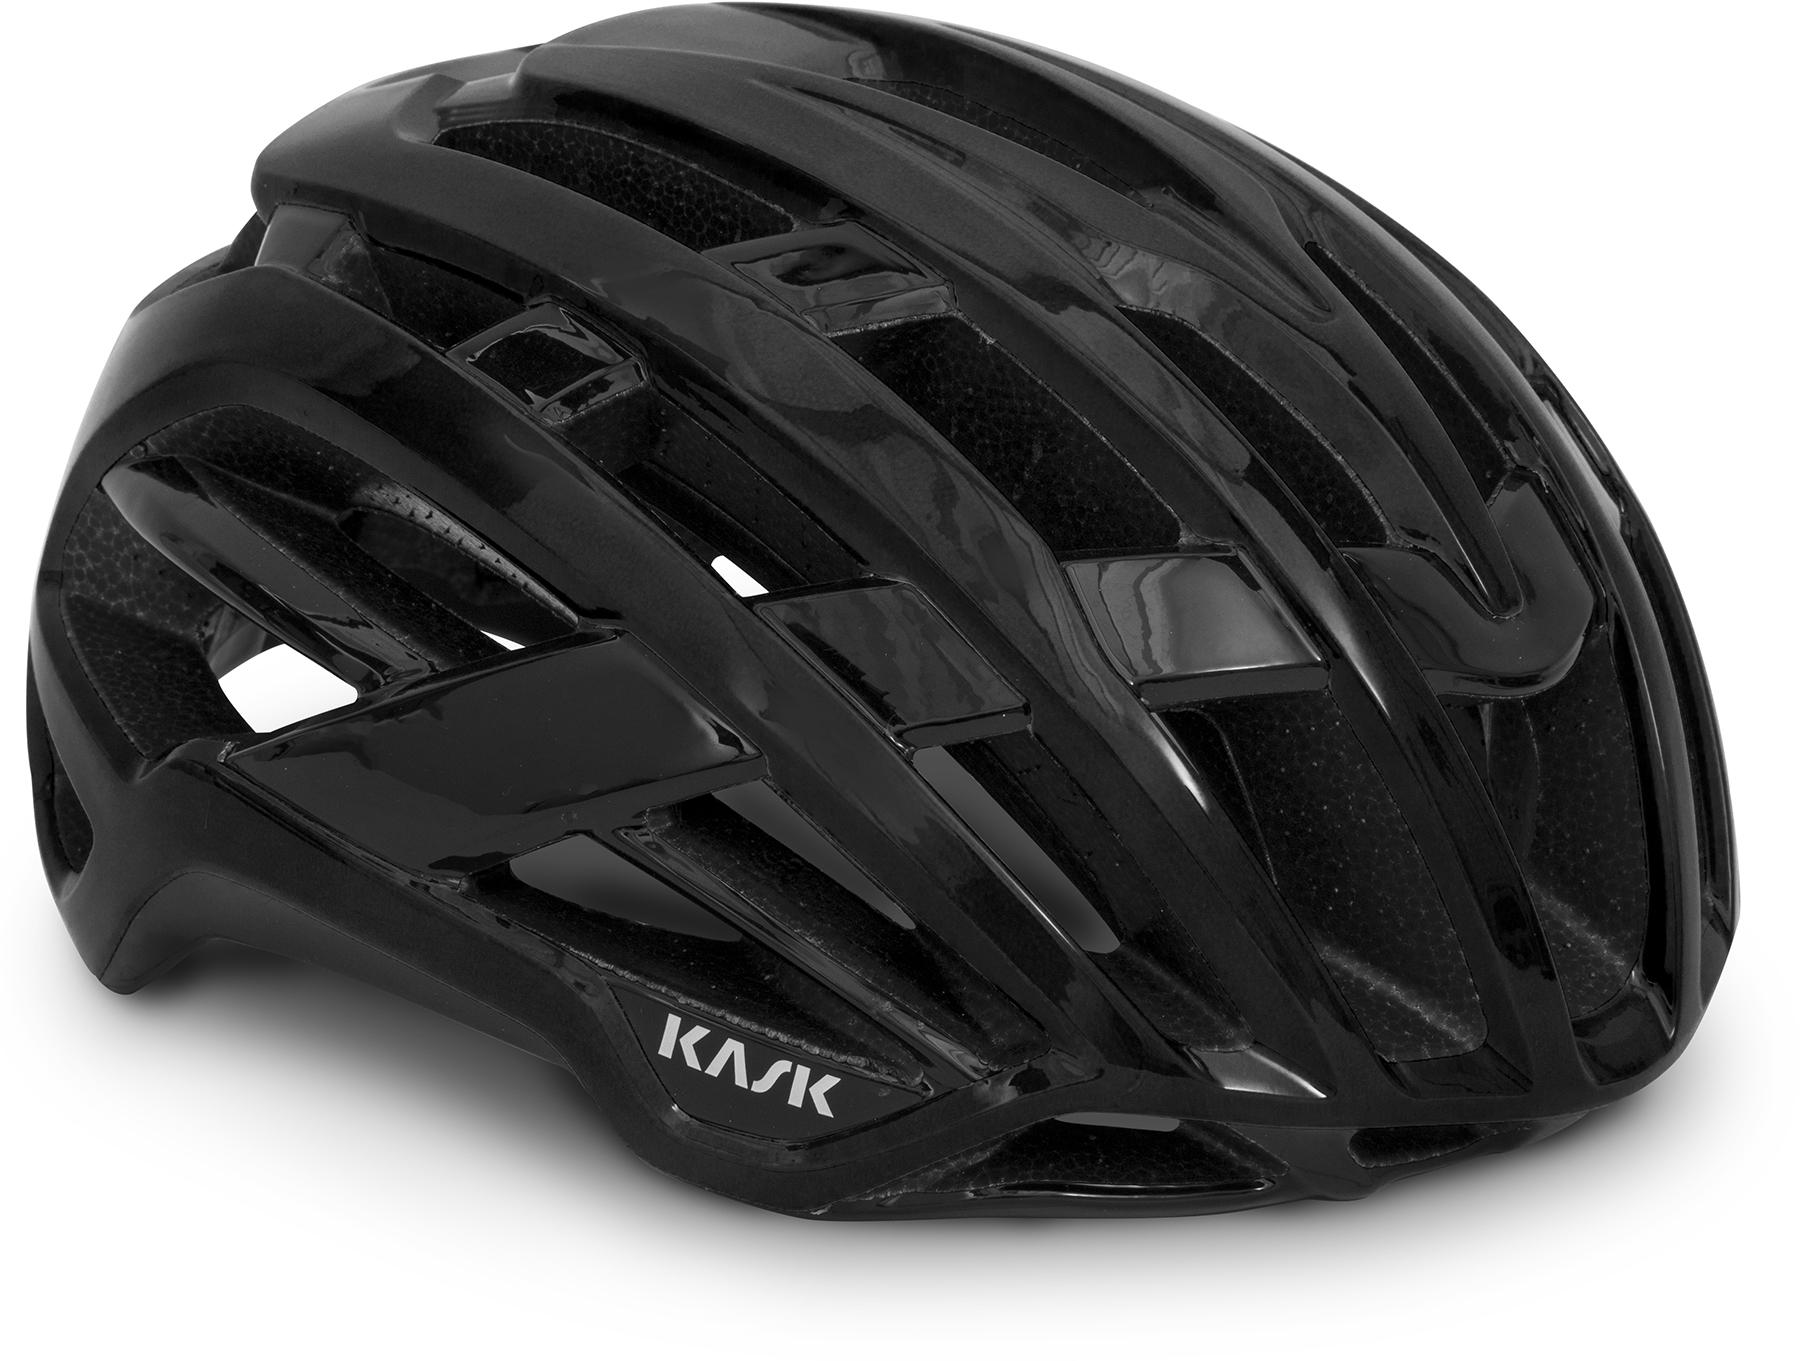 Kask Valegro Road Cycling Helmet (wg11) - Black